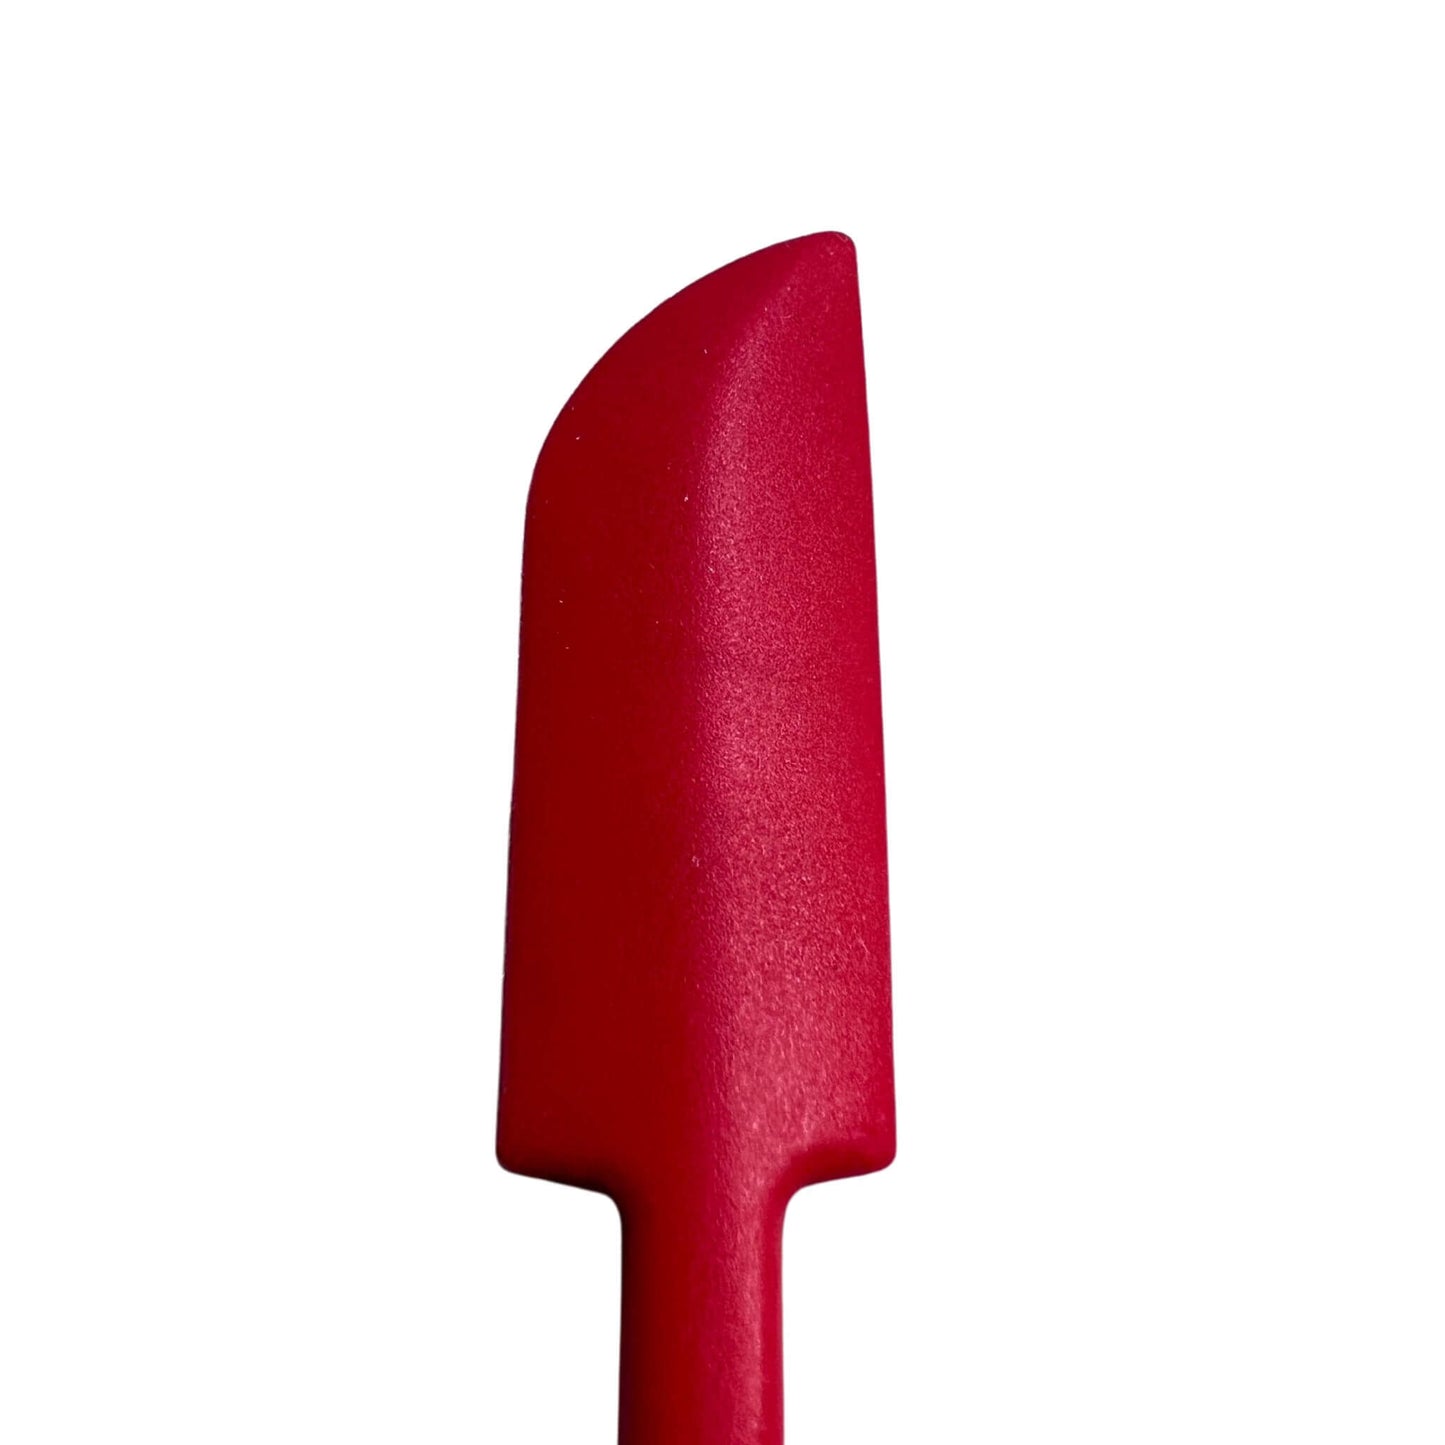 set of 3 jar spatula scrapers in red close up